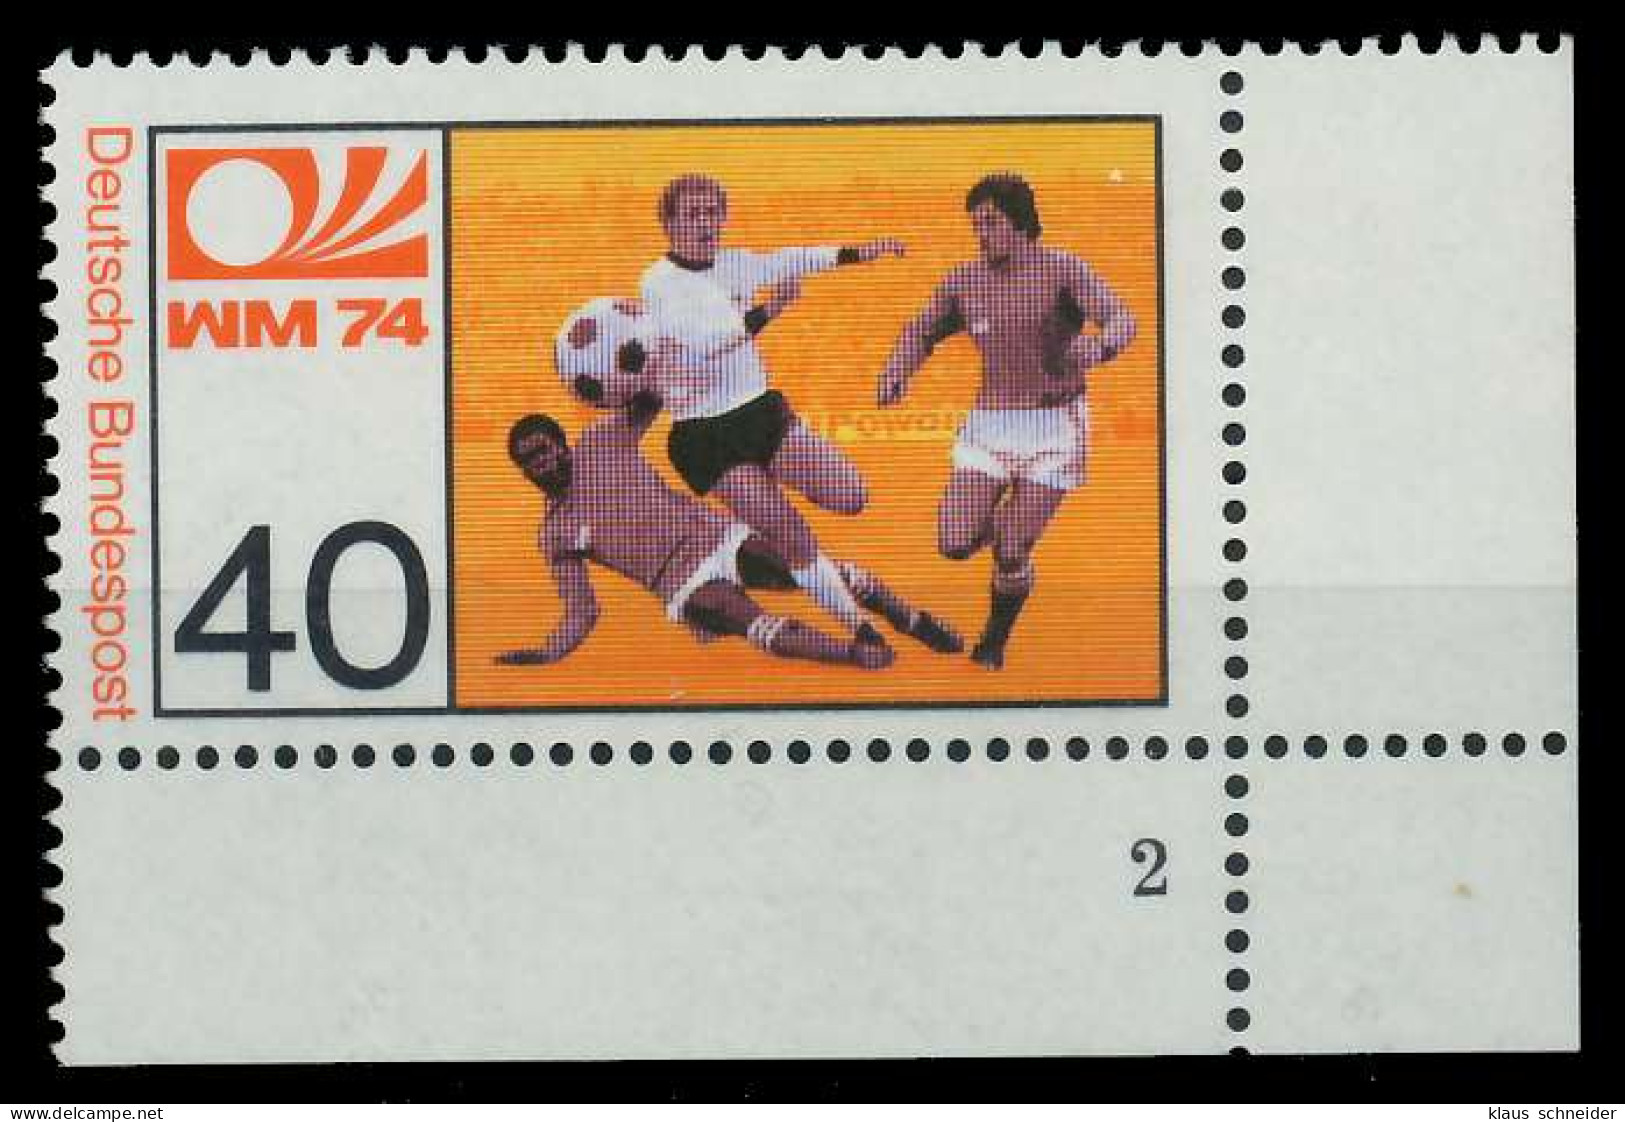 BRD BUND 1974 Nr 812 Postfrisch FORMNUMMER 2 S5E3832 - Unused Stamps